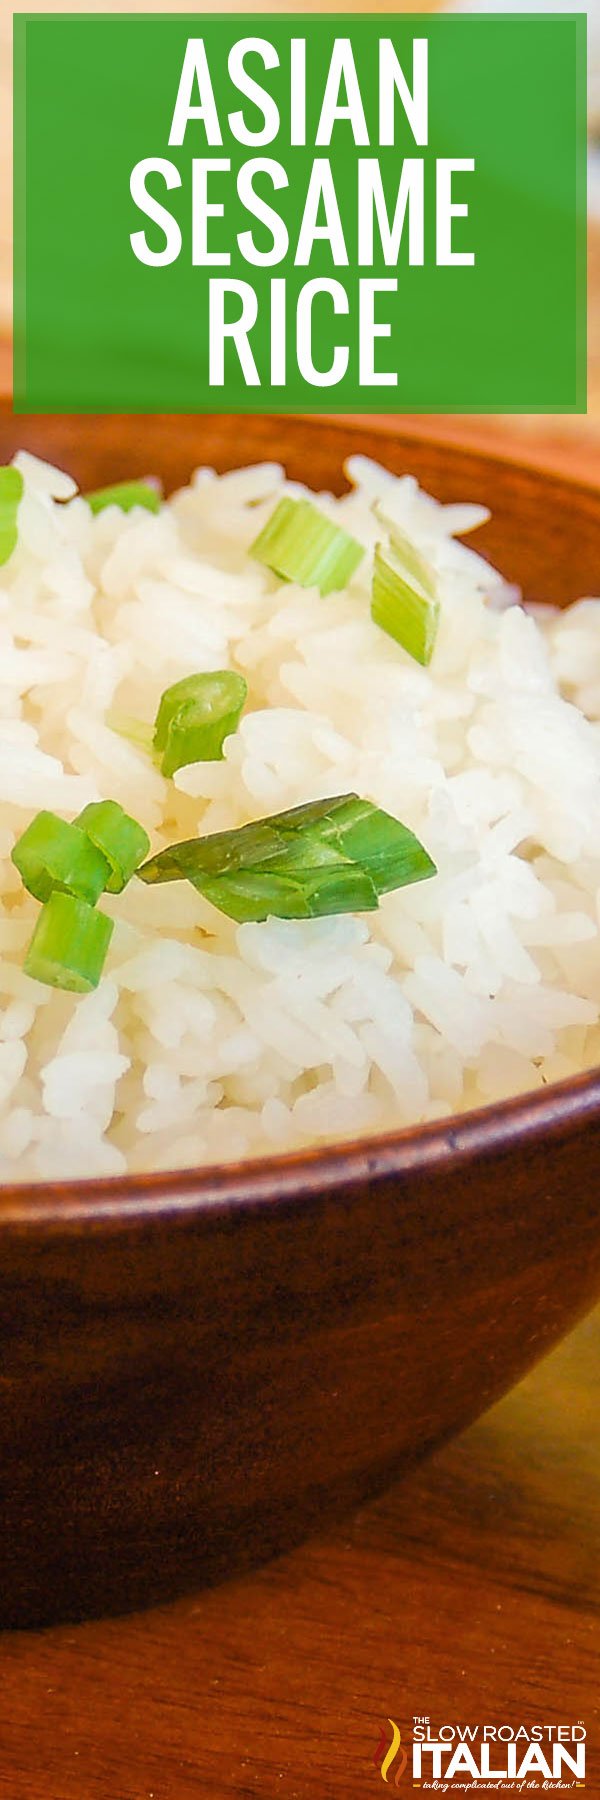 Asian Sesame Rice - PIN